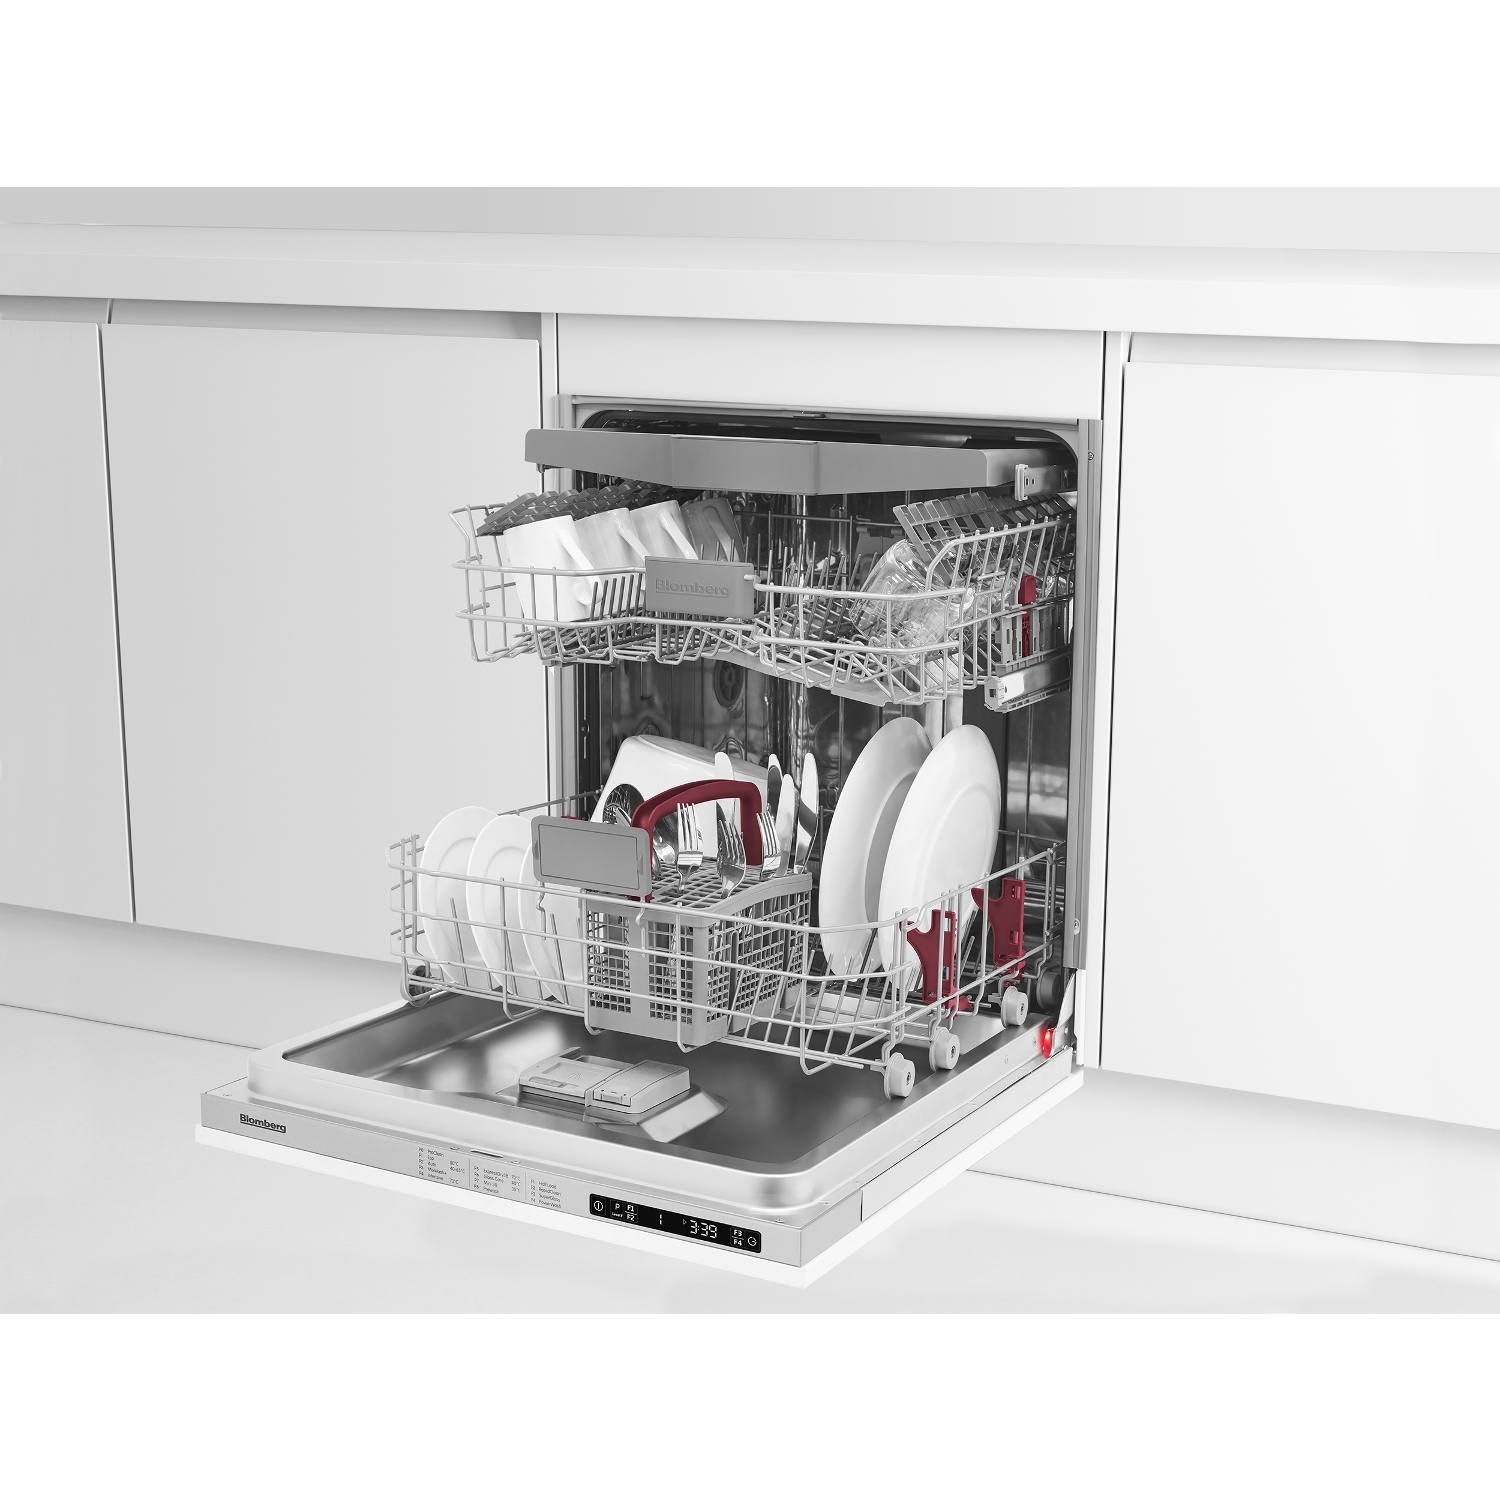 Blomberg LDV42244 Full Size Integrated Dishwasher - 14 Place Settings - 6